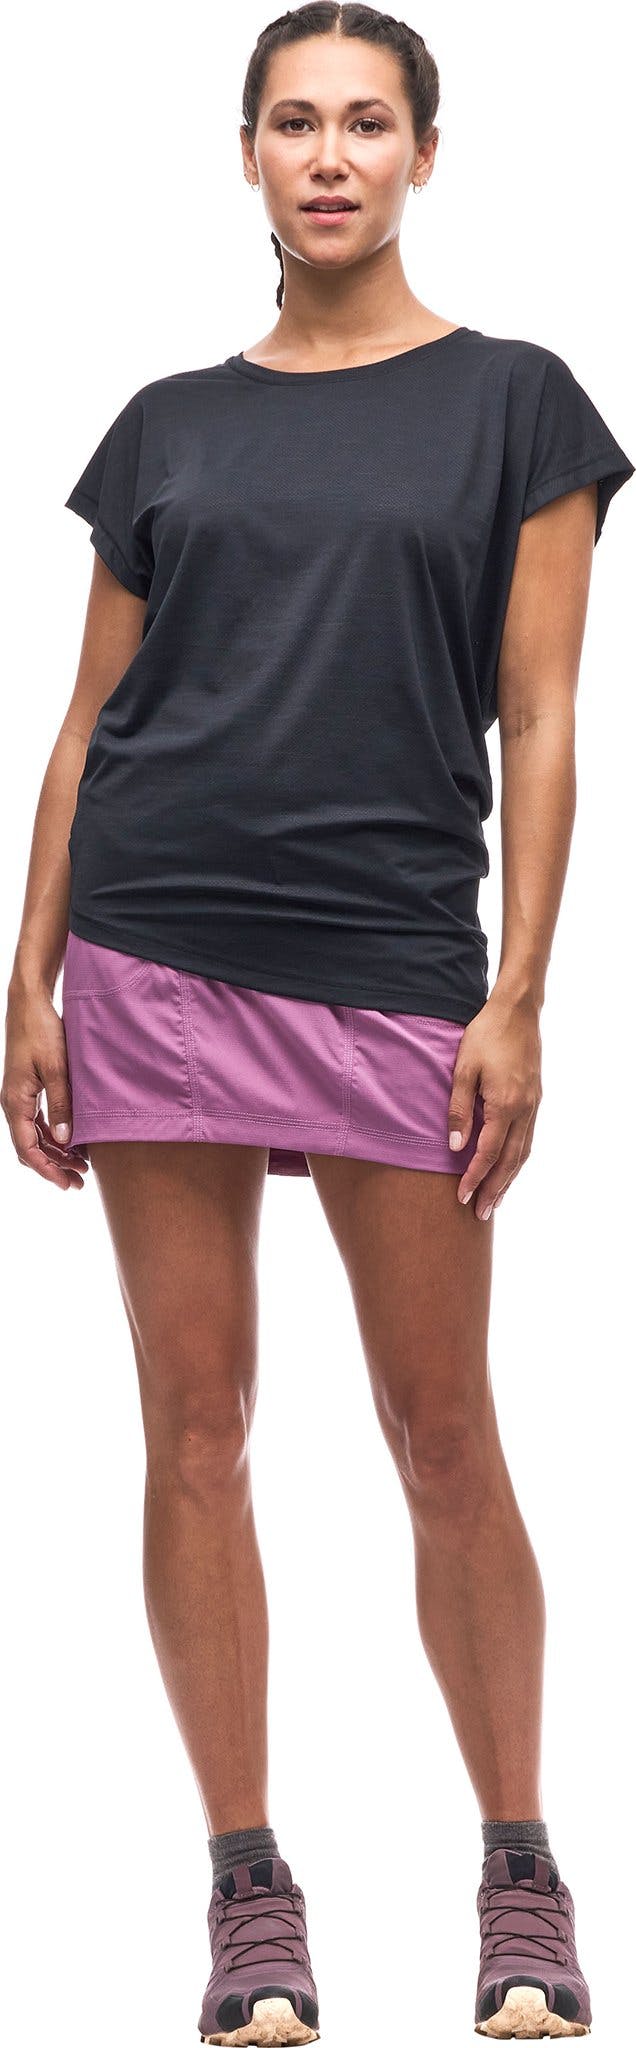 Image de produit pour T-shirt à manches courtes avec ourlet asymétrique Ester III - Femme